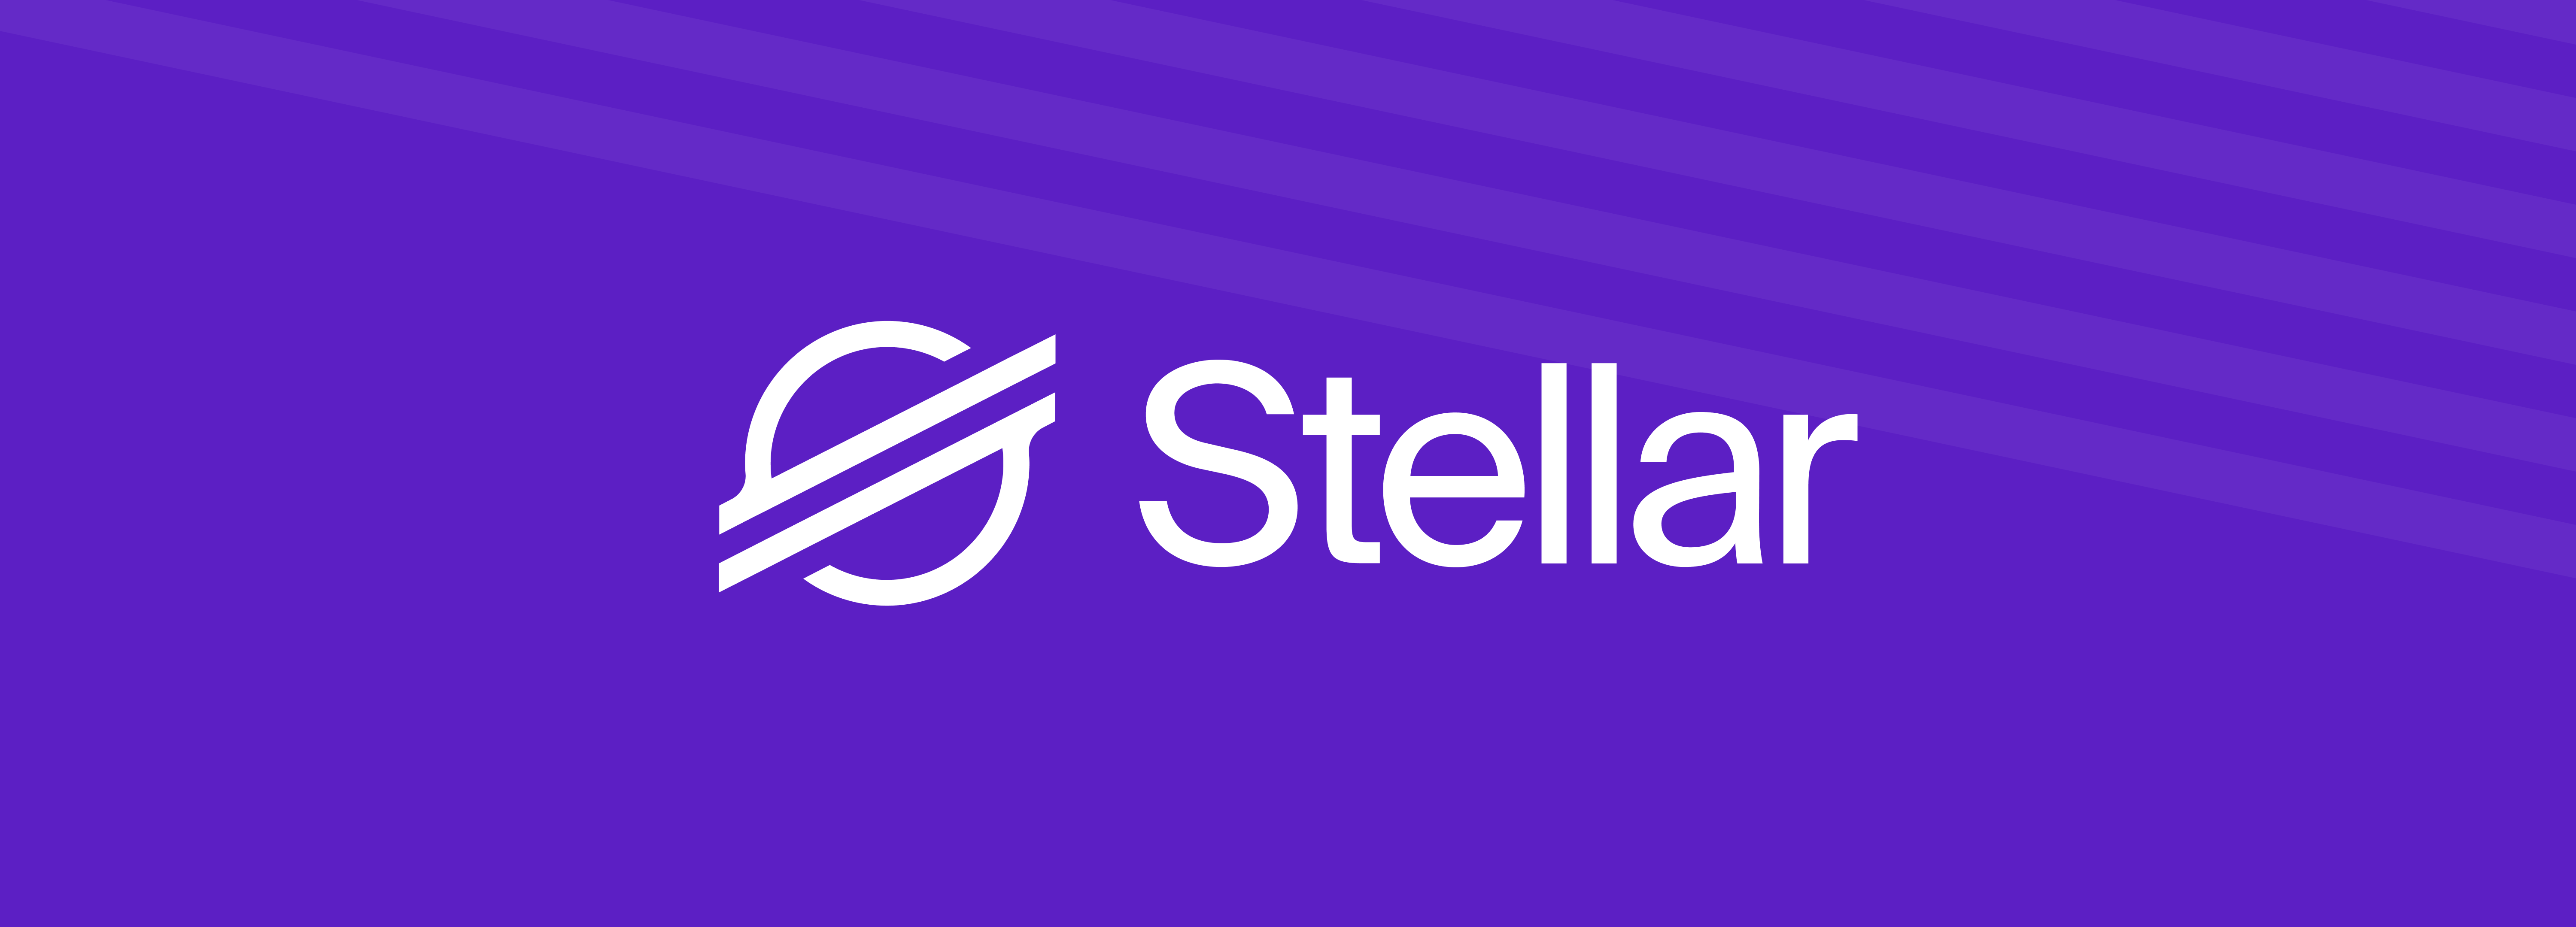 Stellar: Et desentralisert nettverk for oppretting og handel med kryptovaluta